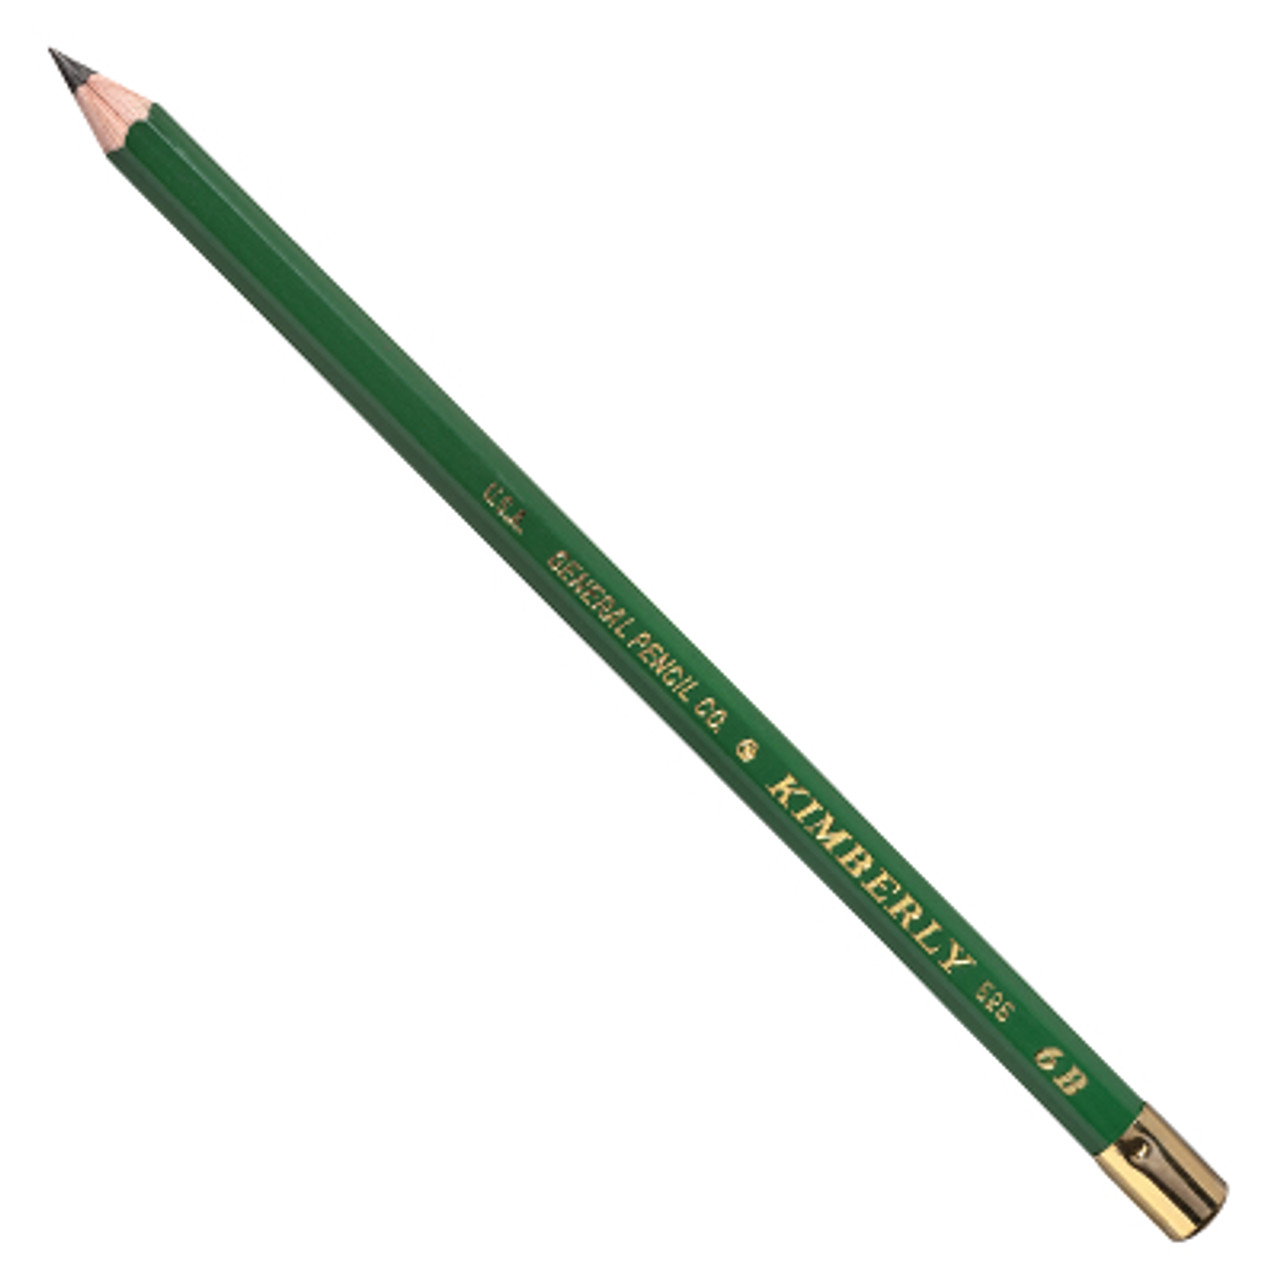 Kimberly Drawing 2-Pencil Sets 6b